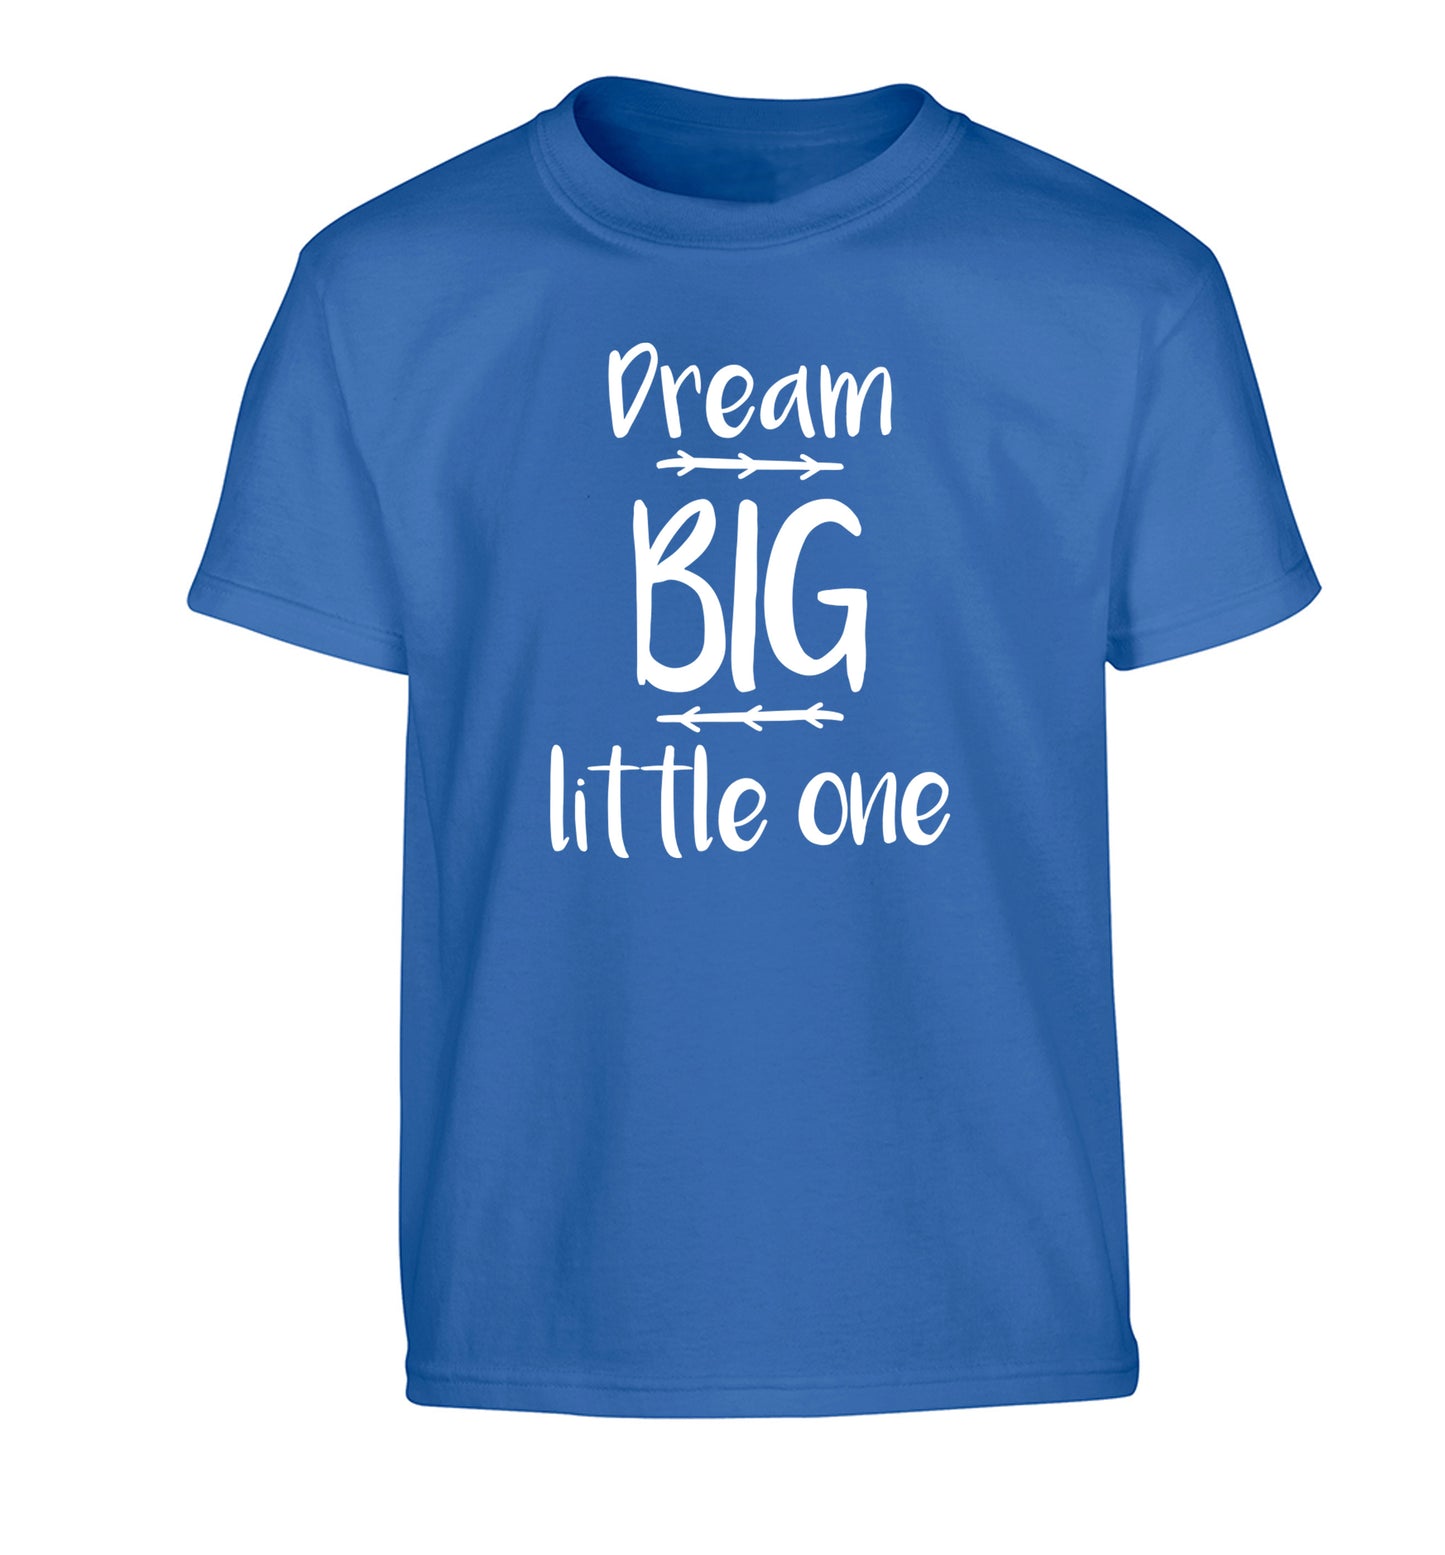 Dream big little one Children's blue Tshirt 12-14 Years